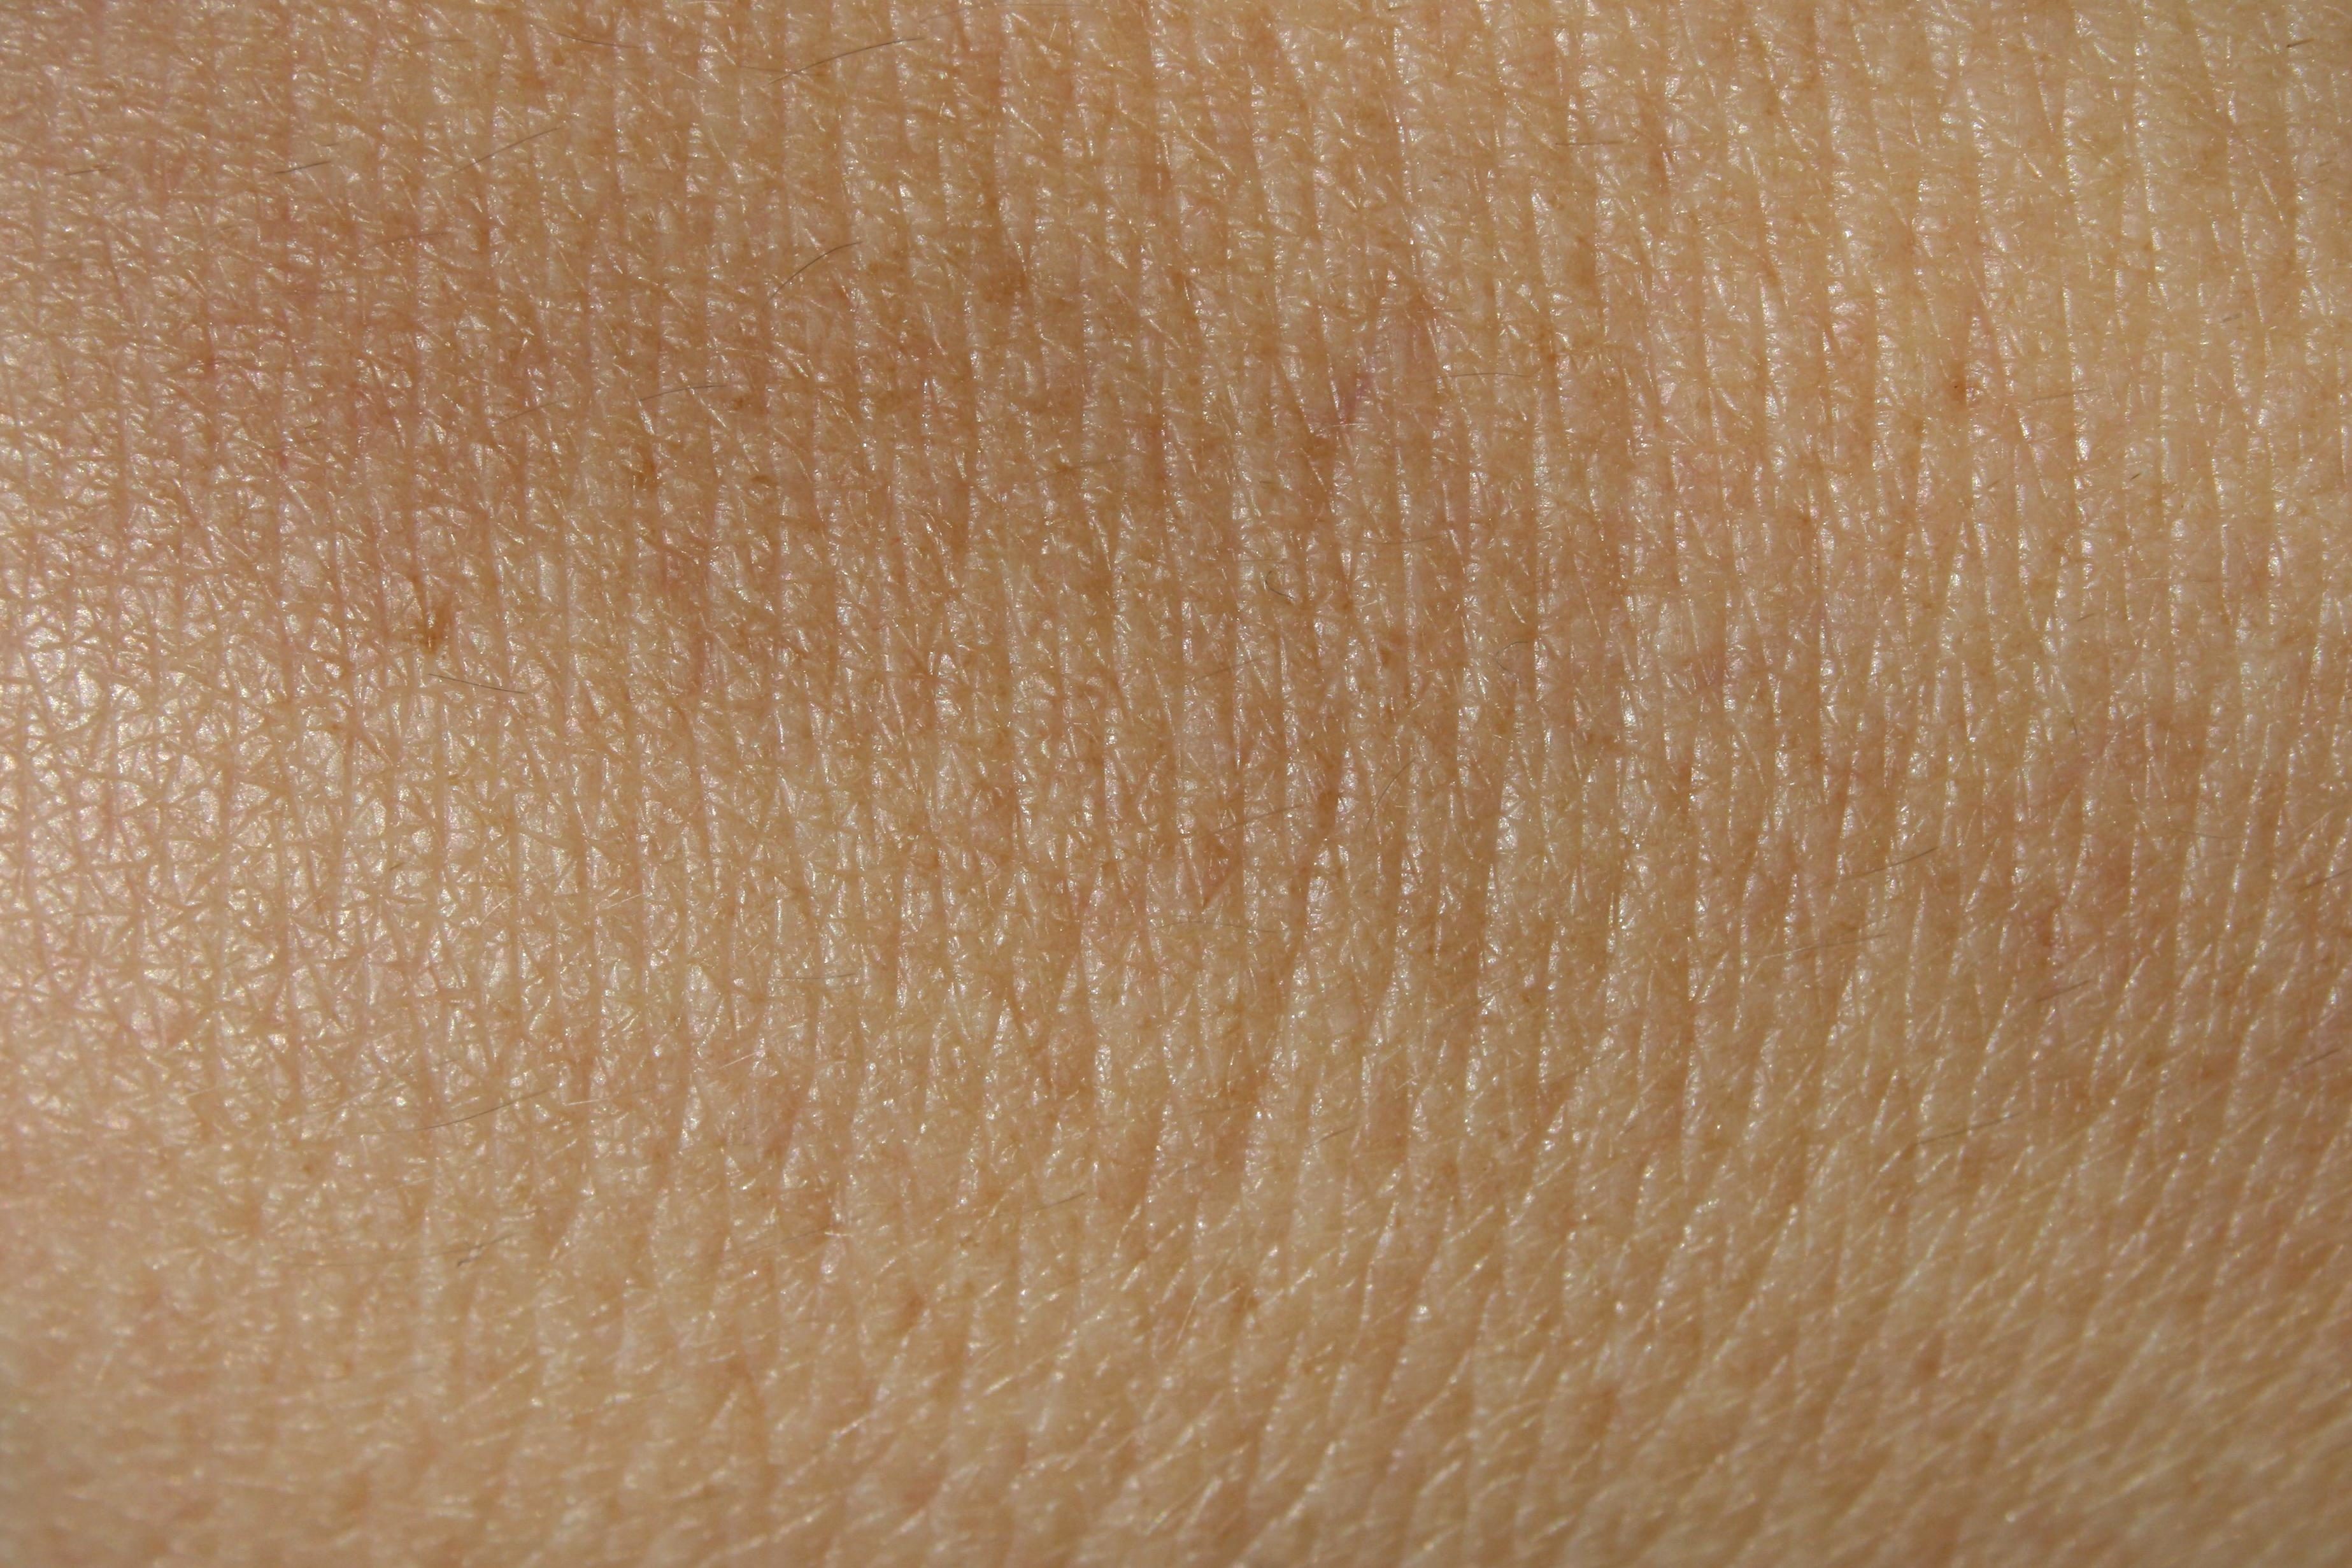 Human Skin Textures